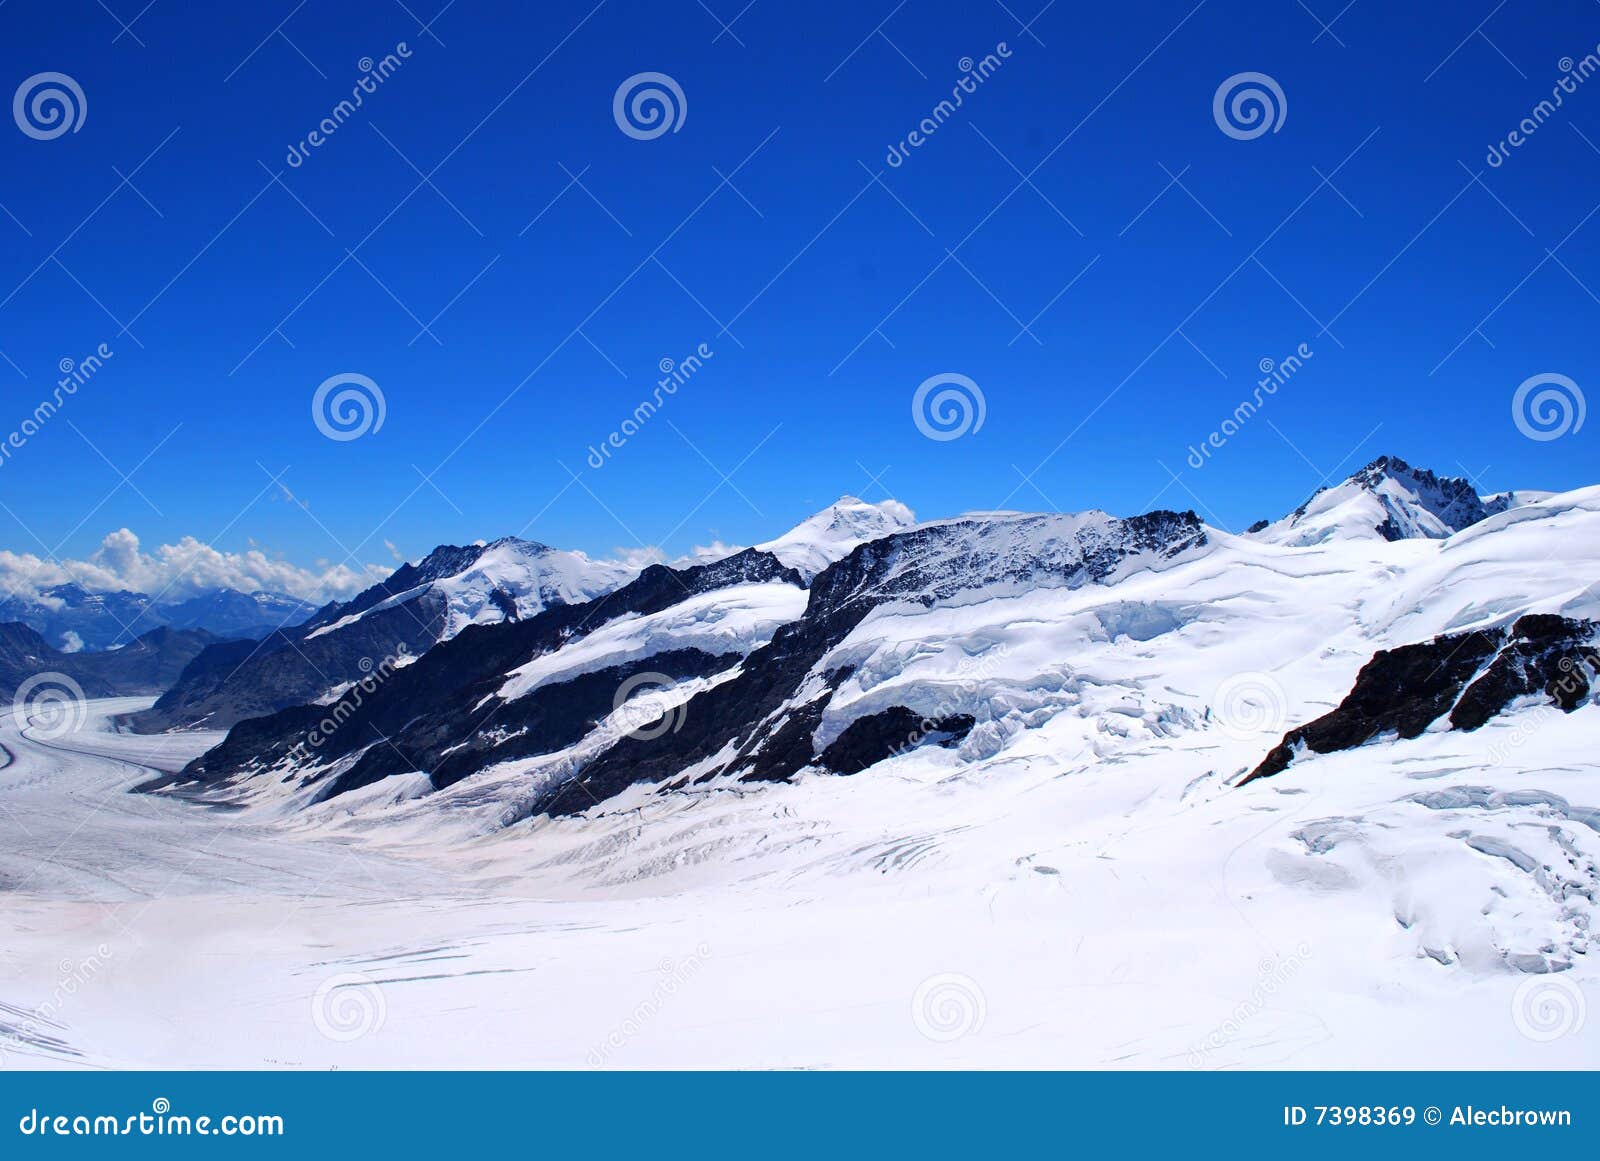 La neve ha ricoperto i picchi di montagna attraverso la neve contro cielo blu libero